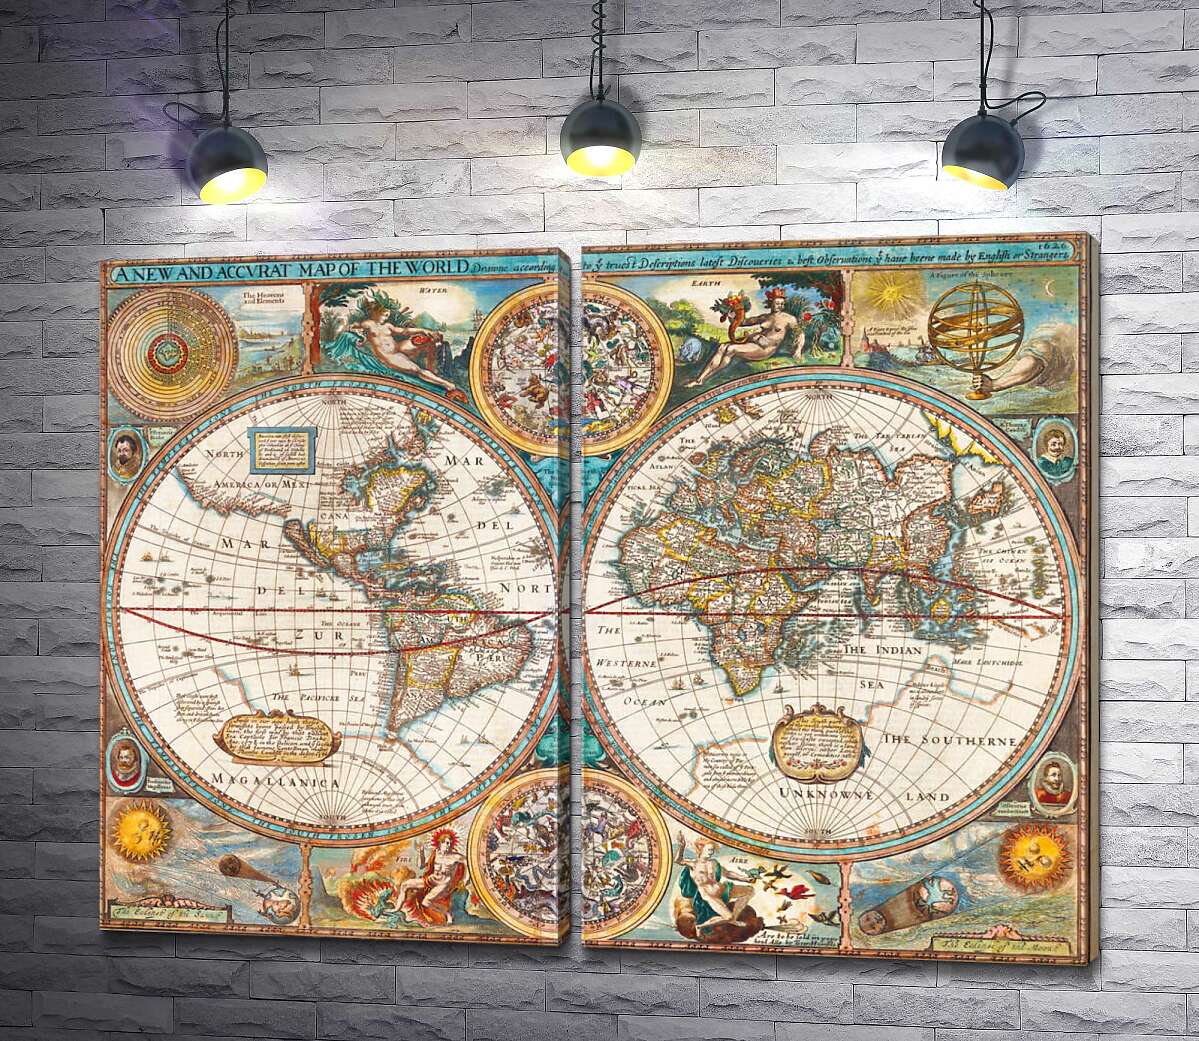 модульна картина Географічна карта "Нового світу" 1627 року, авторства картографа Джона Спіда (John Speed)